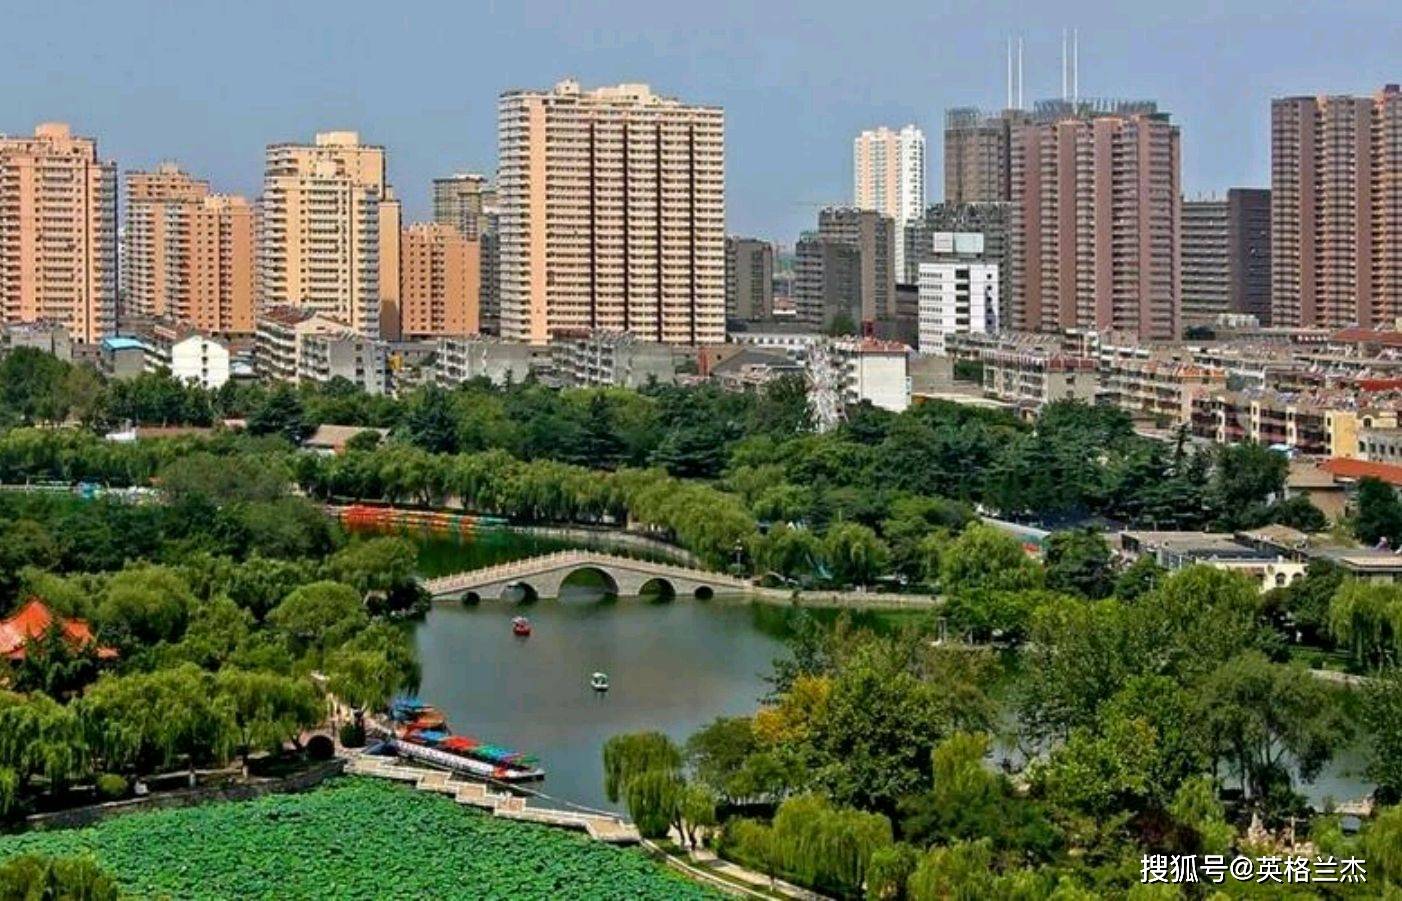 人口最多城市_中国人口最多的城市:人口高达3000万,相当于一个省